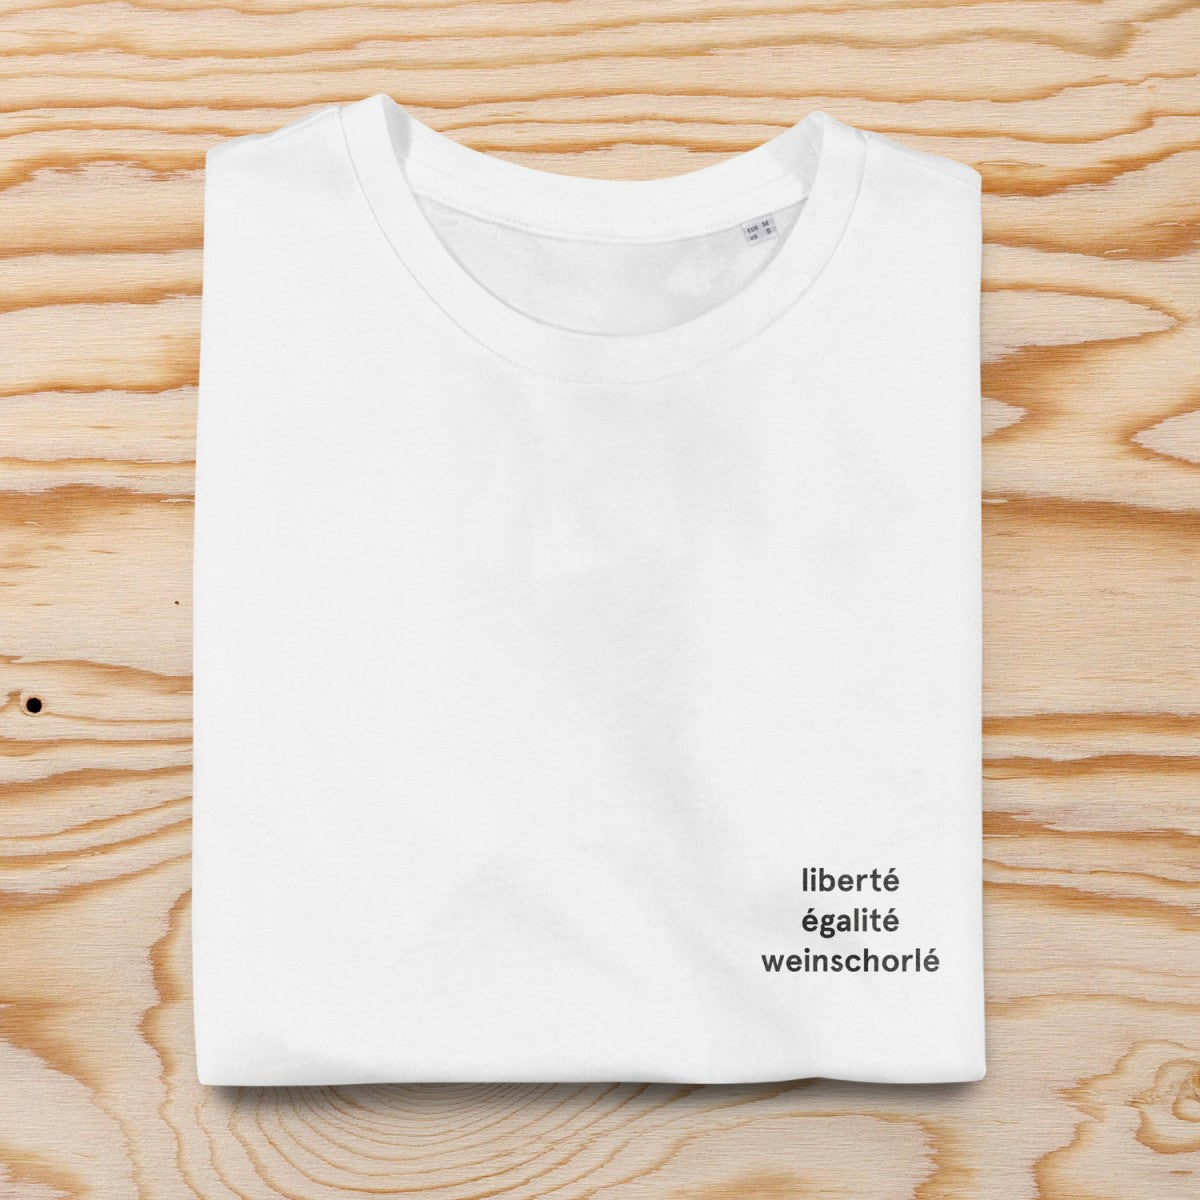 Selekkt Unisex T-Shirt "liberté égalité weinschorlé" - weiß